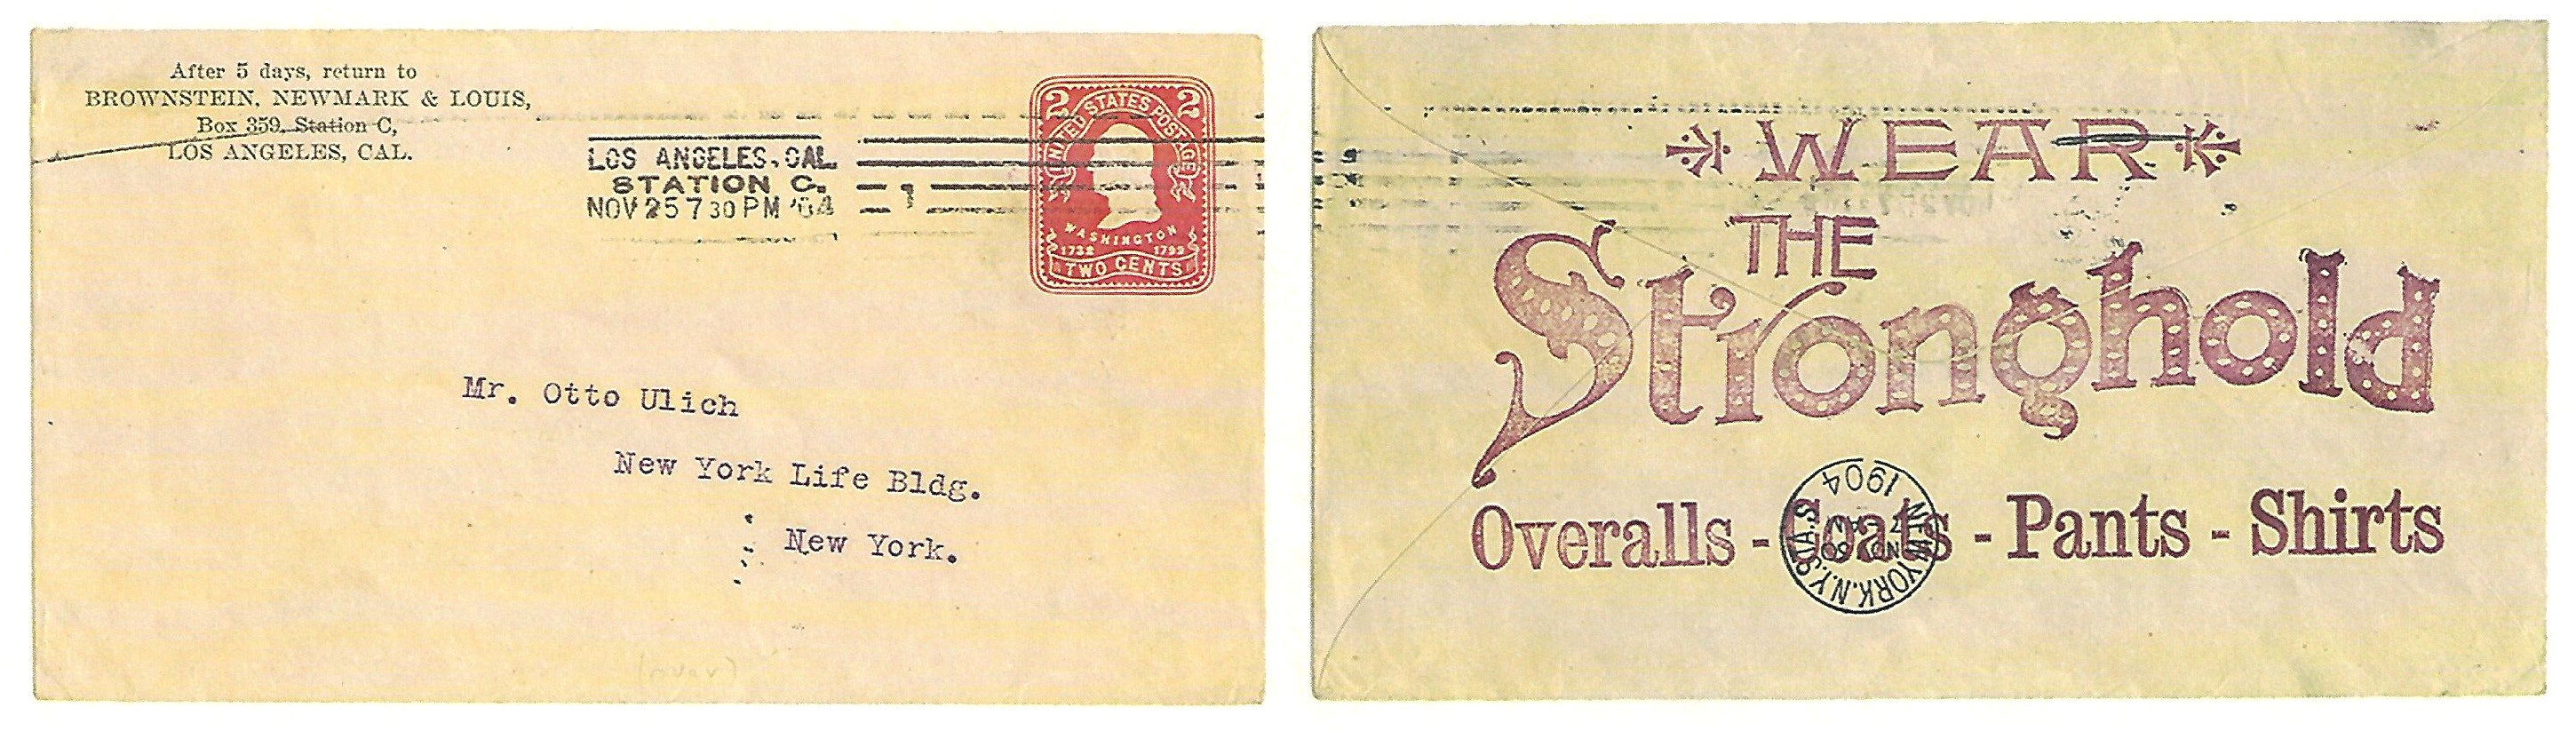 The tronghold Letter 1904 Postmark